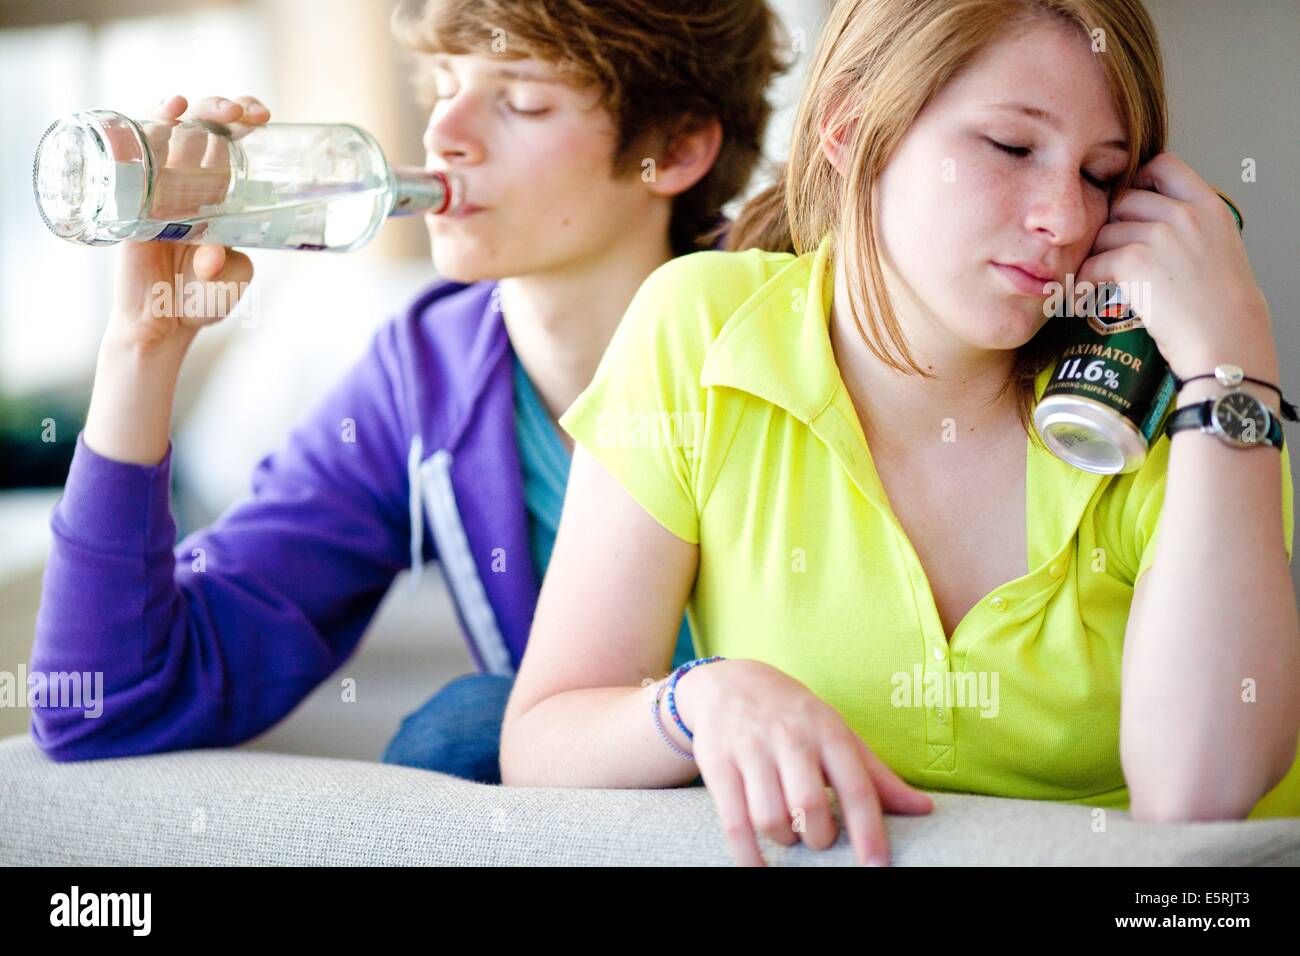 Les adolescents de consommer de l'alcool. Banque D'Images